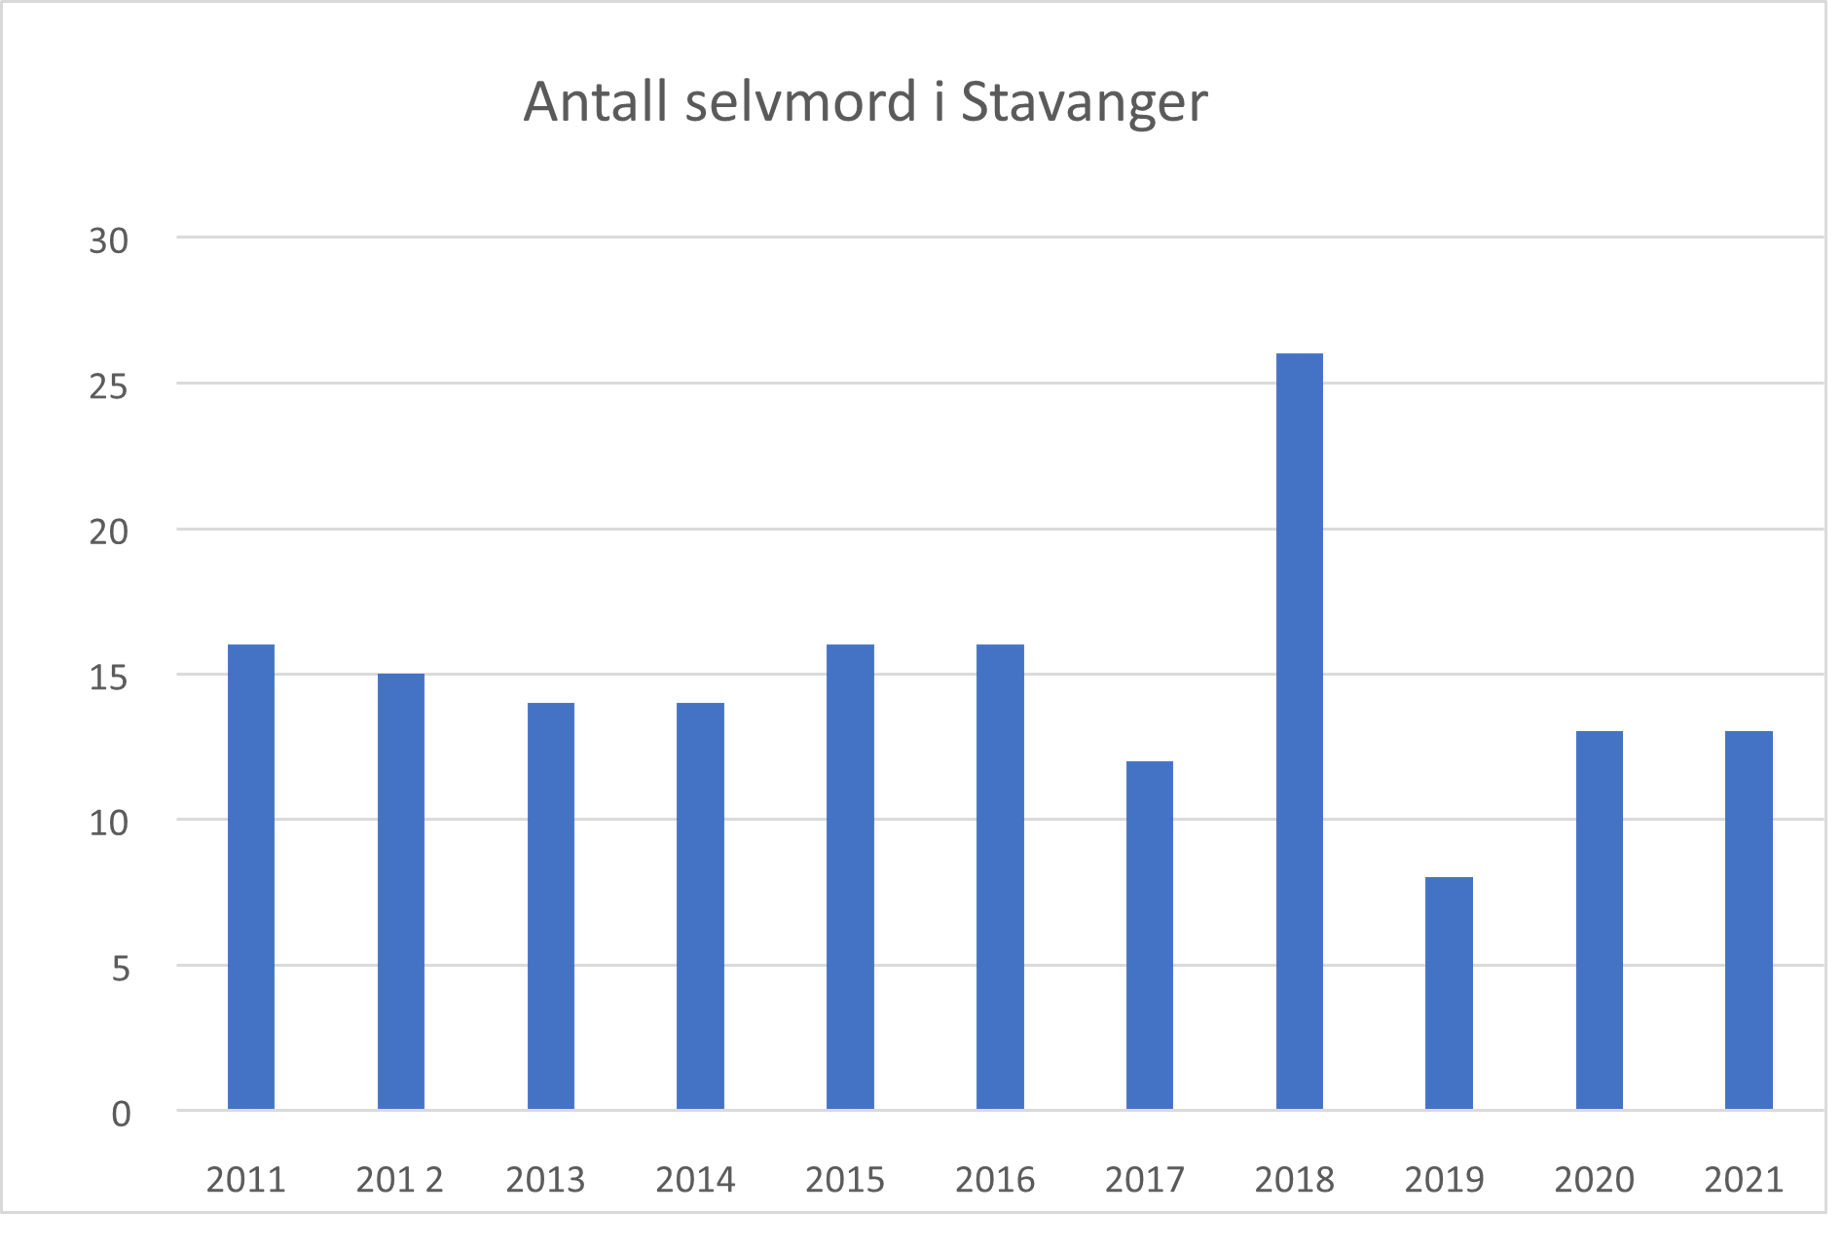 Antall selvmord i Stavanger